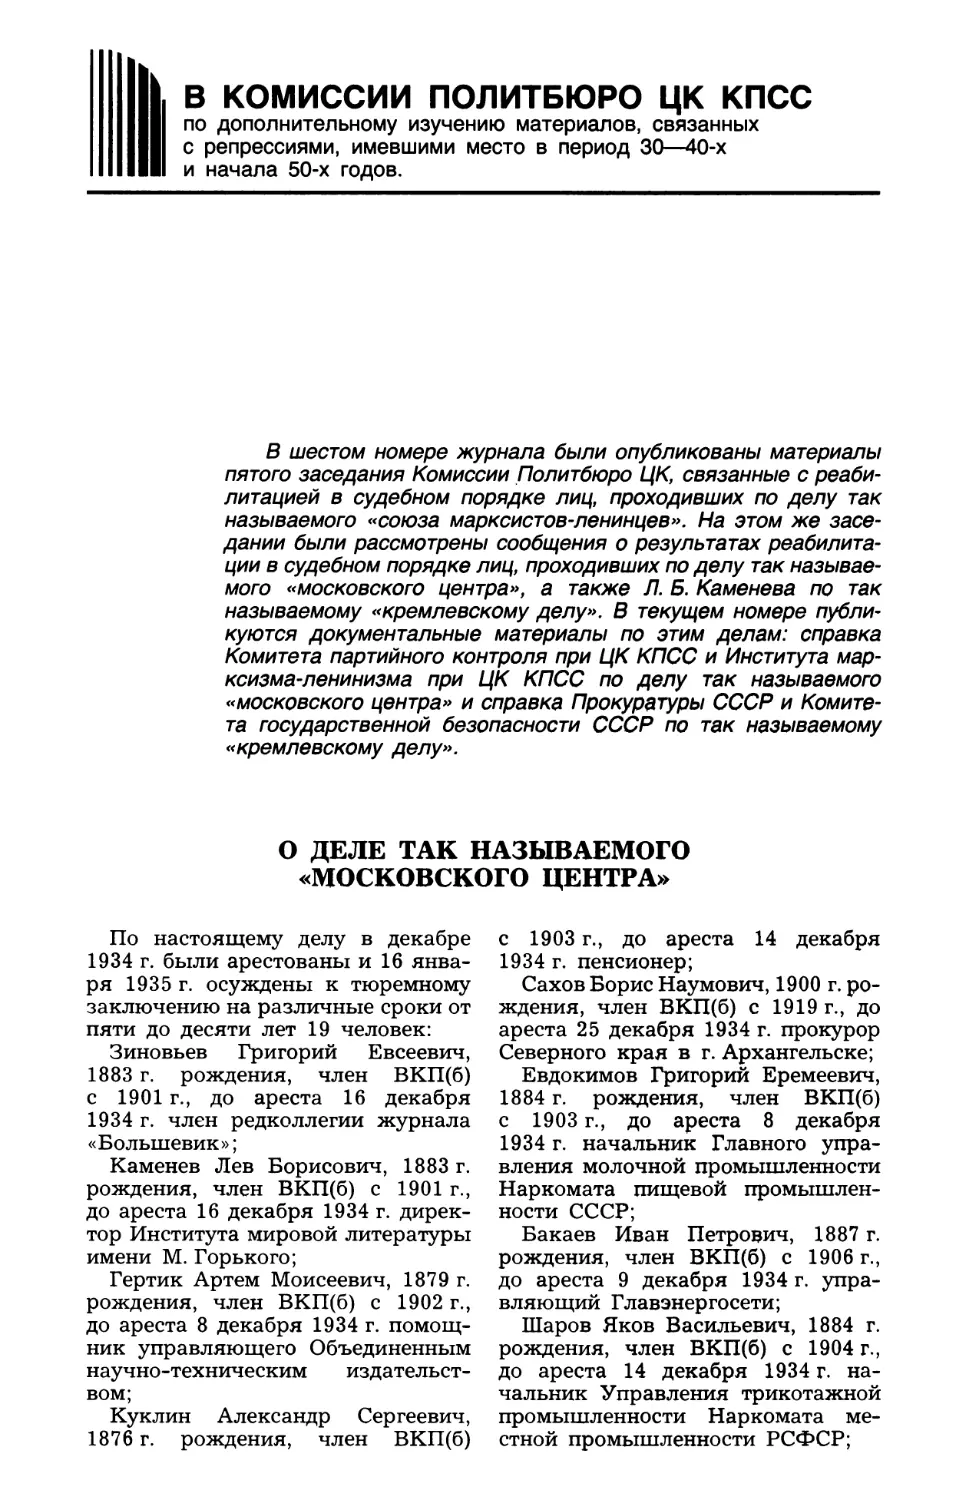 В комиссии Политбюро ЦК КПСС по доп. изуч. материалов связанных с репрессиями, имевшими место в период 30-40-х и начала 50-х годов